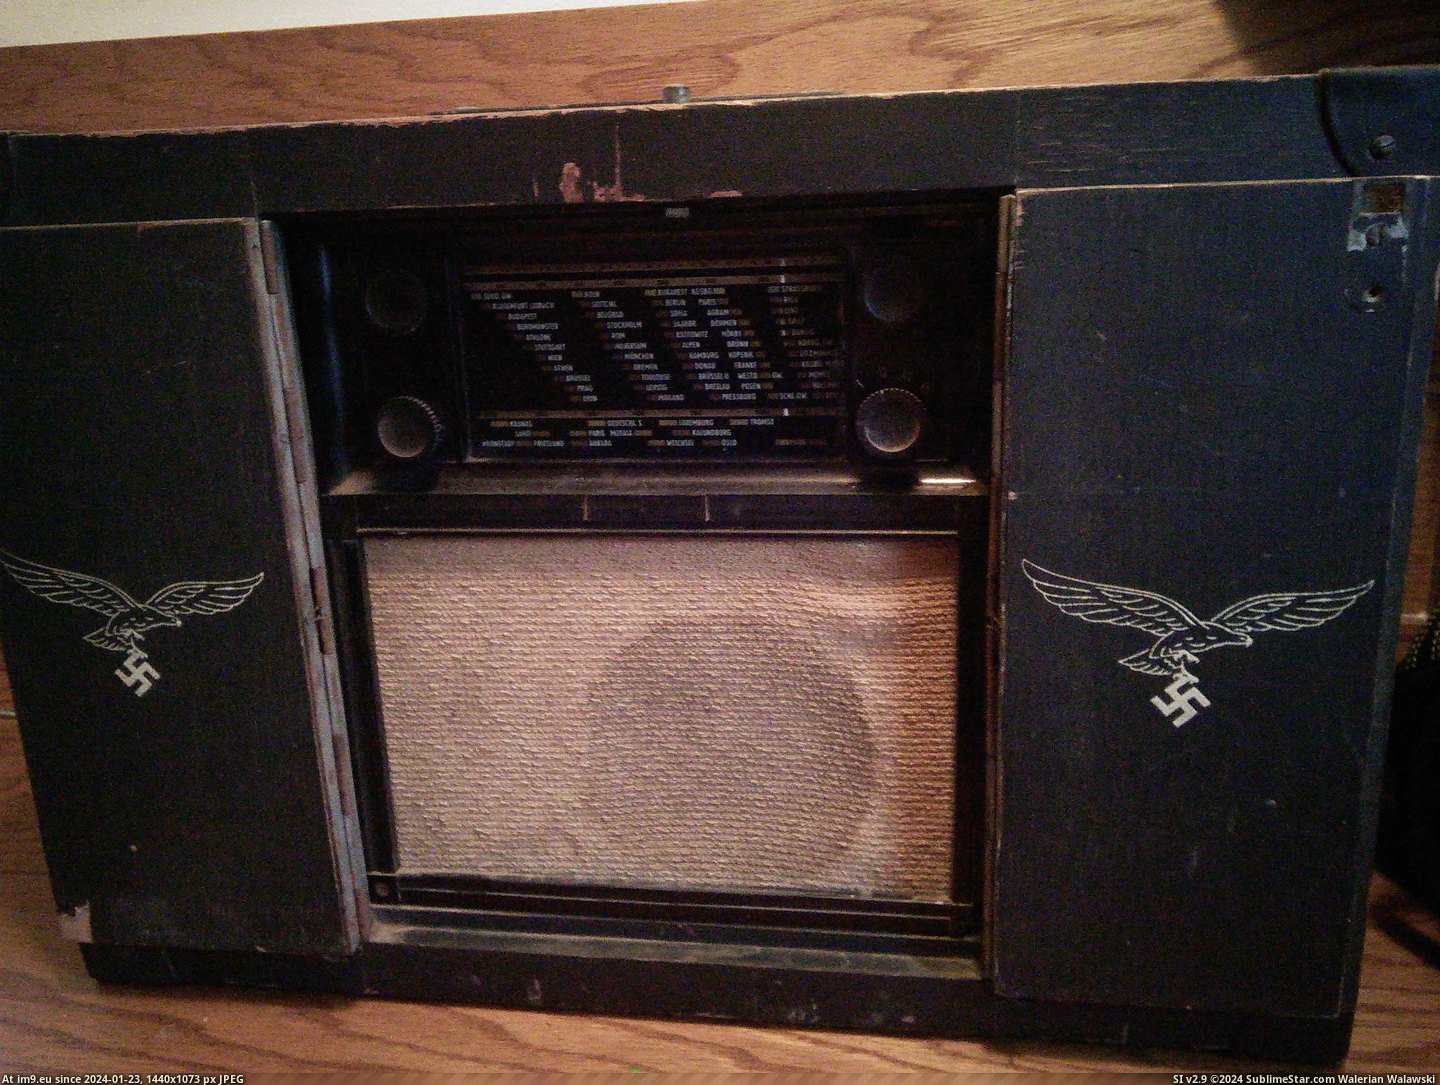 #Wtf #Sale #Radio #Nazi #Garage [Wtf] I found a Nazi radio at a garage sale for 20$ Pic. (Изображение из альбом My r/WTF favs))